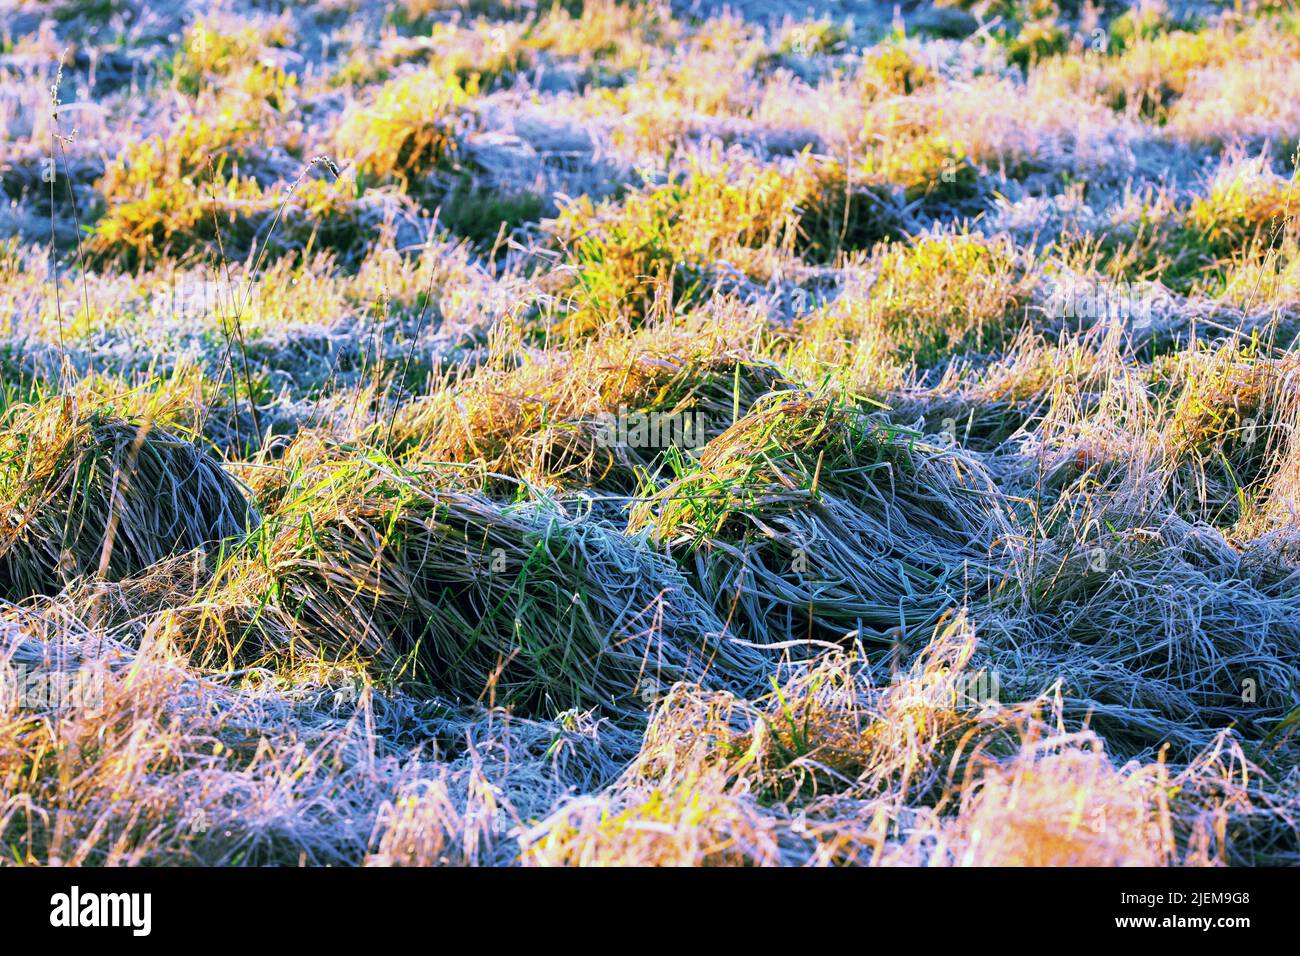 Gros plan de l'herbe verte surcultivée qui pousse sur un marais ou un marais en Norvège. Arrière-plan texturé d'une tourbière et d'un milieu humide non cultivés dans une zone éloignée. Sauvage Banque D'Images